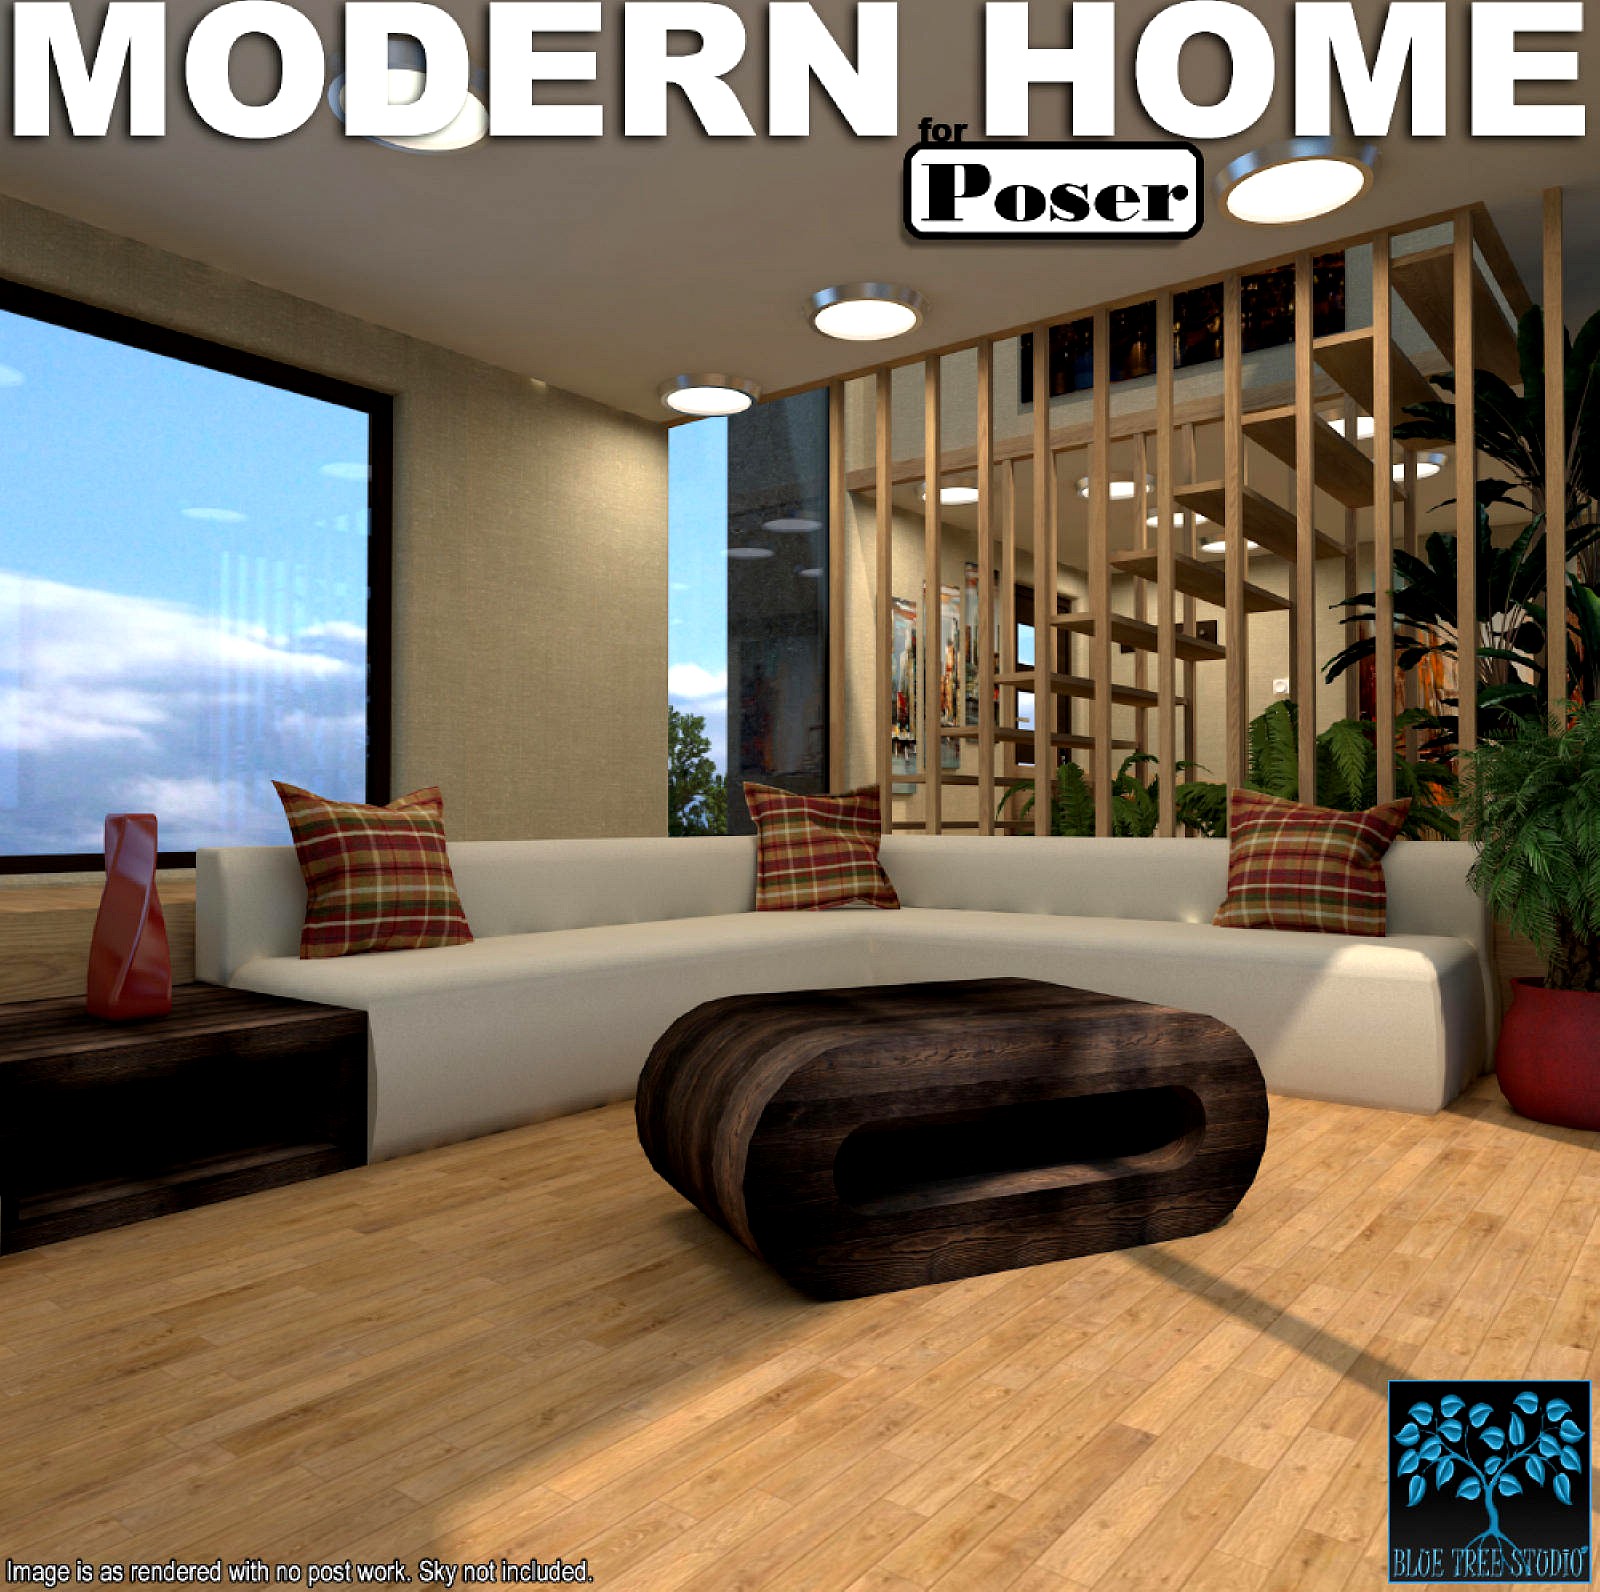 Modern Home for Poser